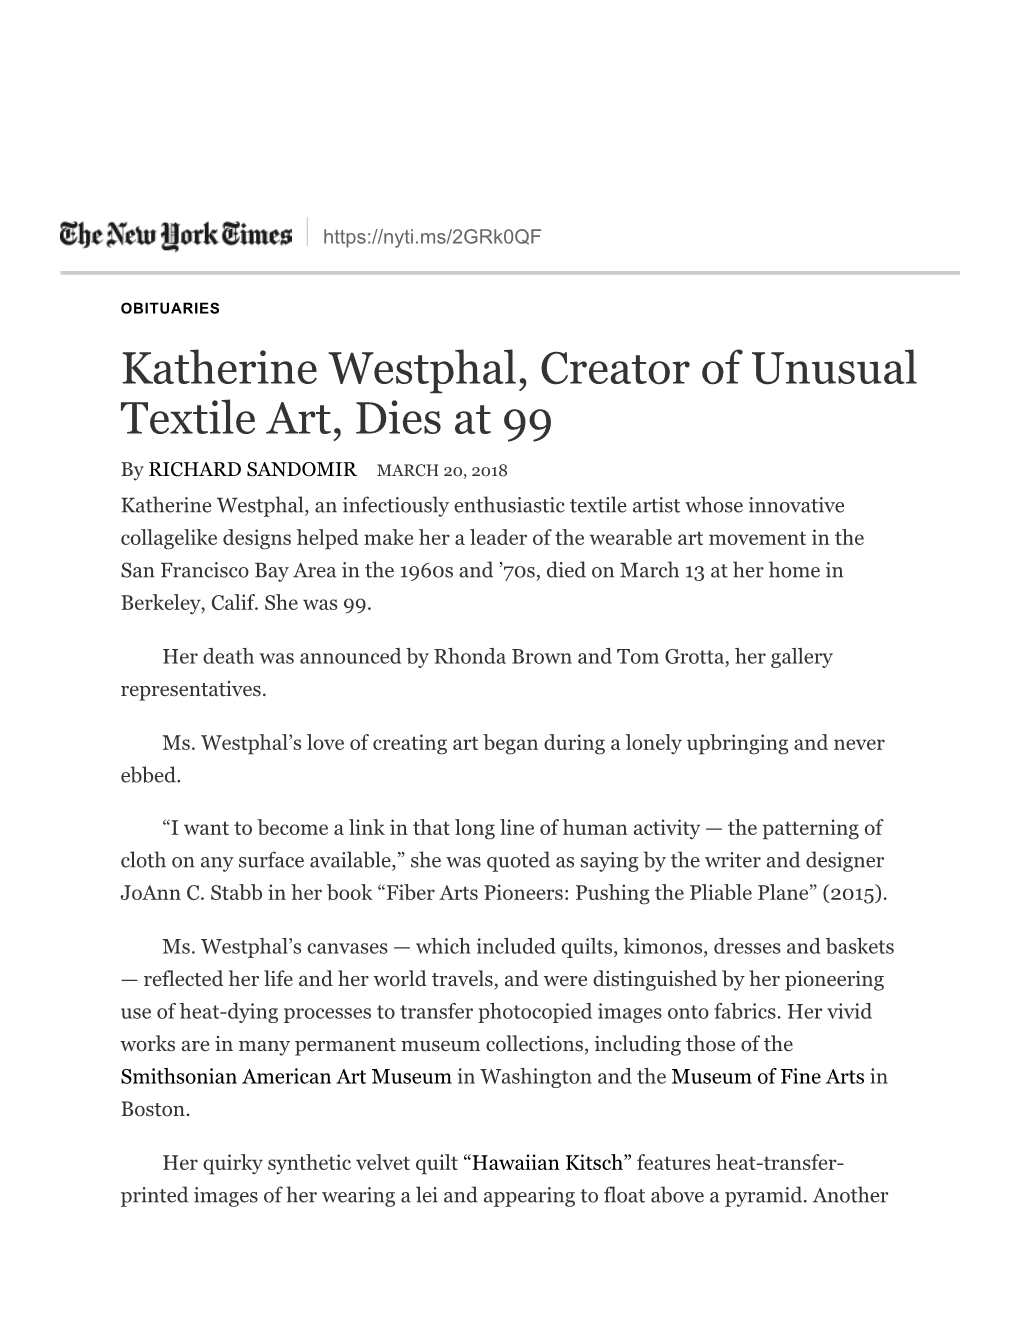 Katherine Westphal, Creator of Unusual Textile Art, Dies at 99